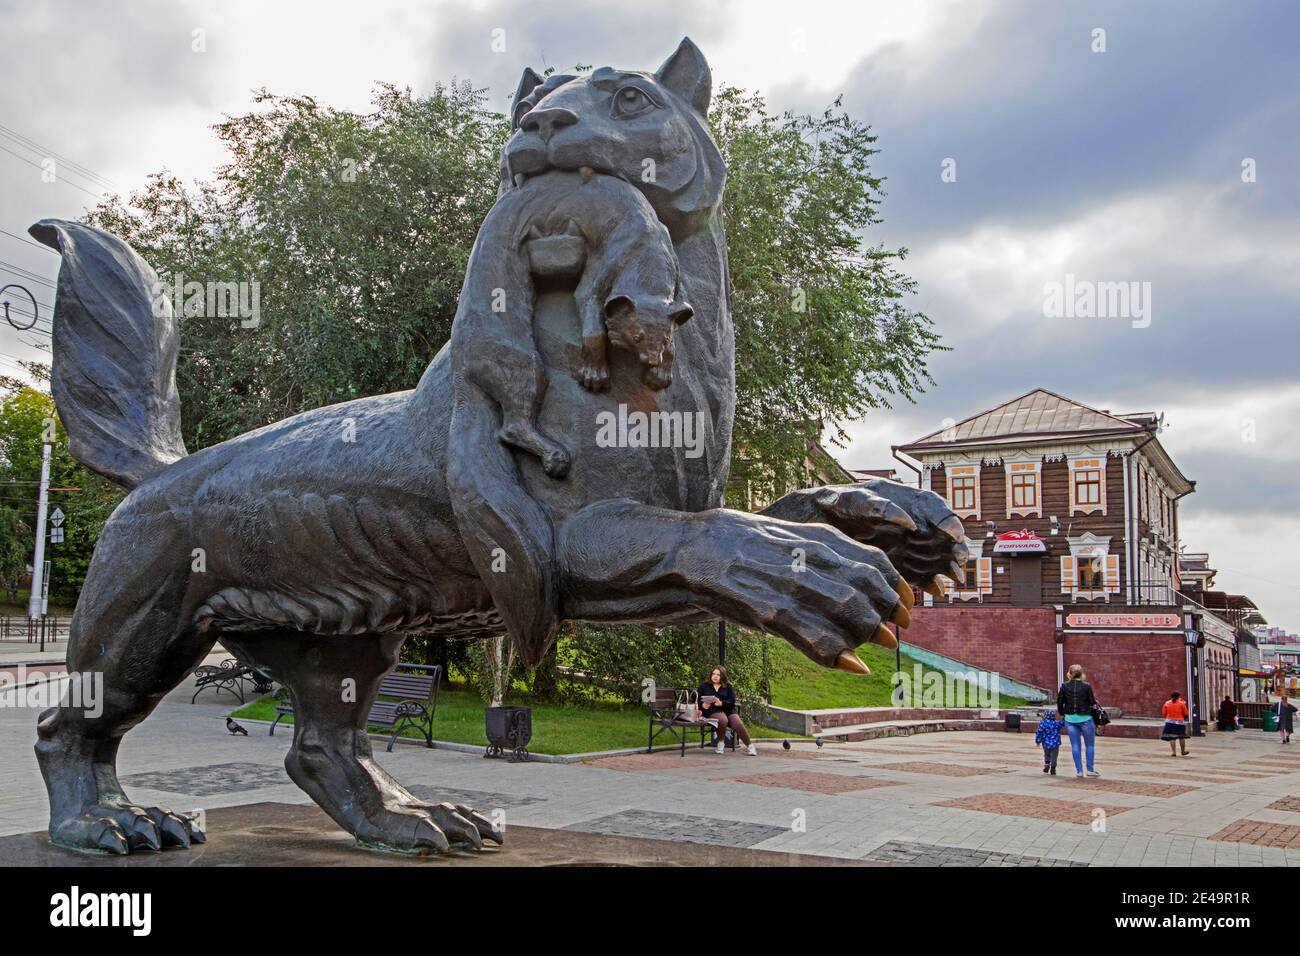 Statua di Babr, creatura mitologica e simbolo della città Irkutsk all'ingresso del quartiere storico in legno 'insediamento Irkutsk', Siberia, Russia Foto Stock